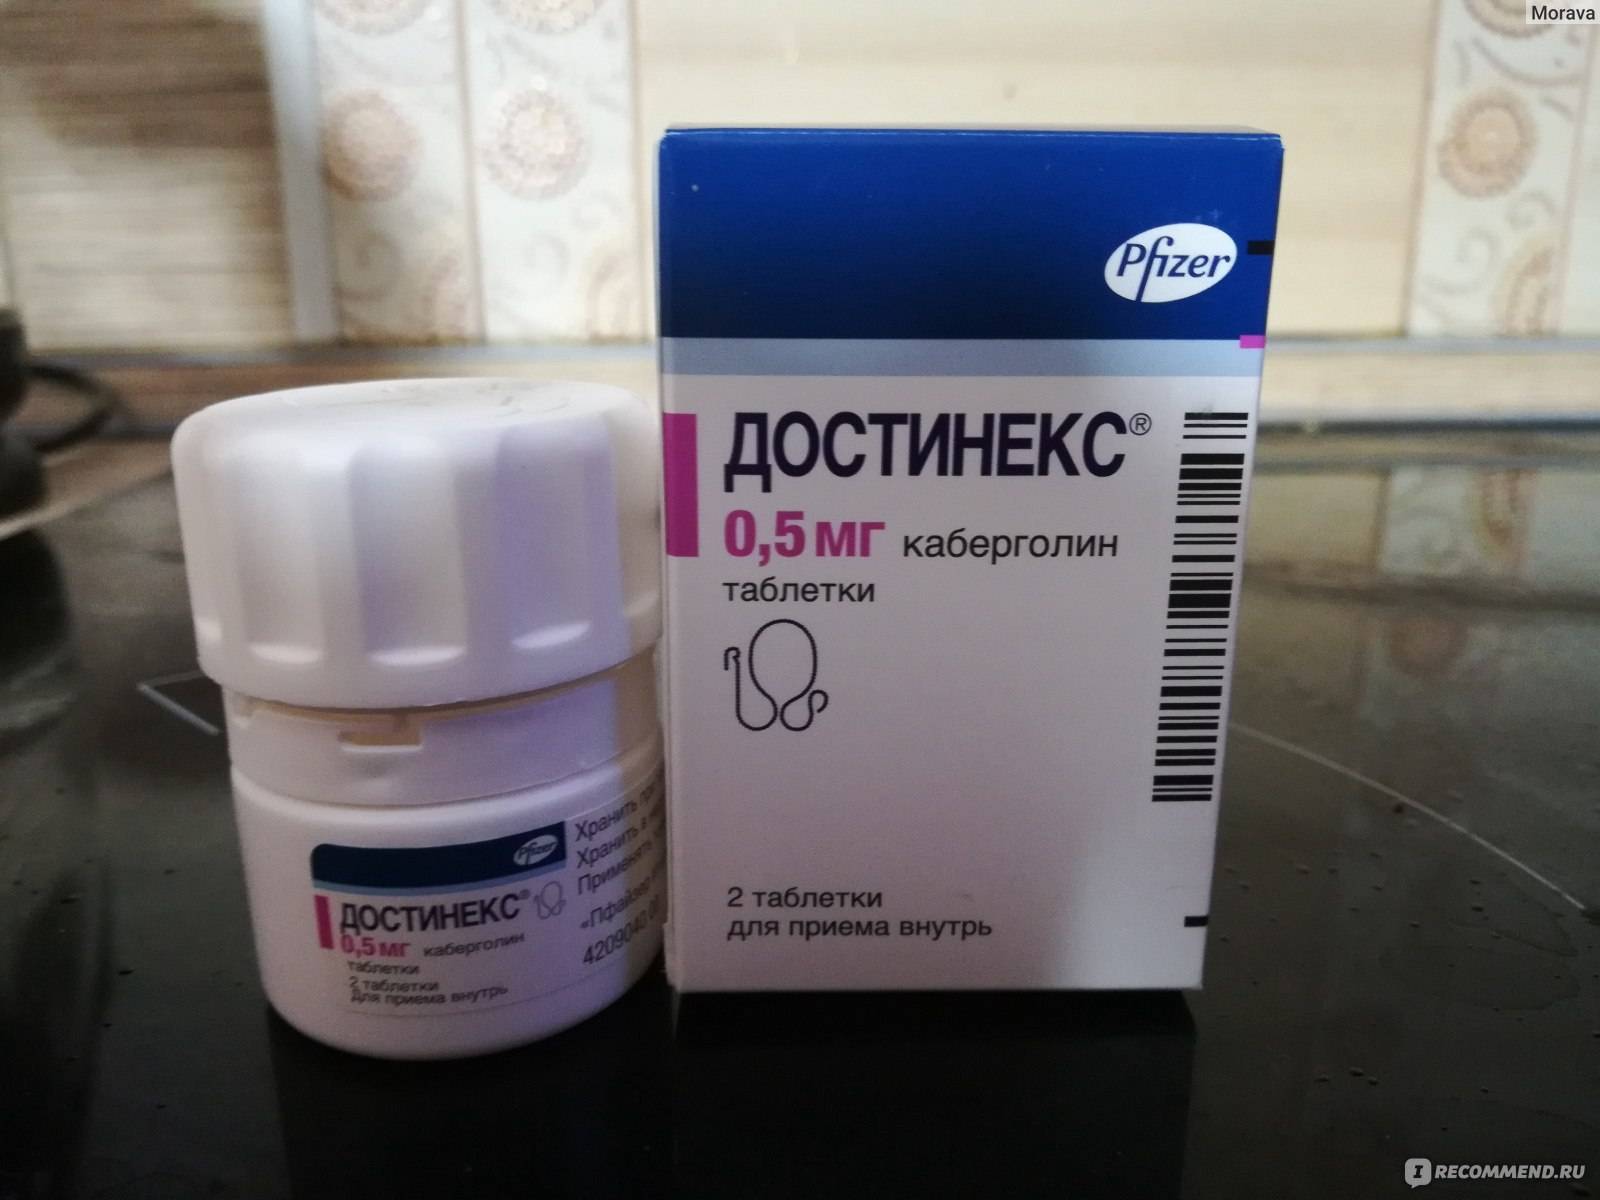 Достинекс инструкция по применению: cabergoline действующее вещество, срок годности, побочные эффекты – dostineks таблетки 0,5 мг применение и отзывы